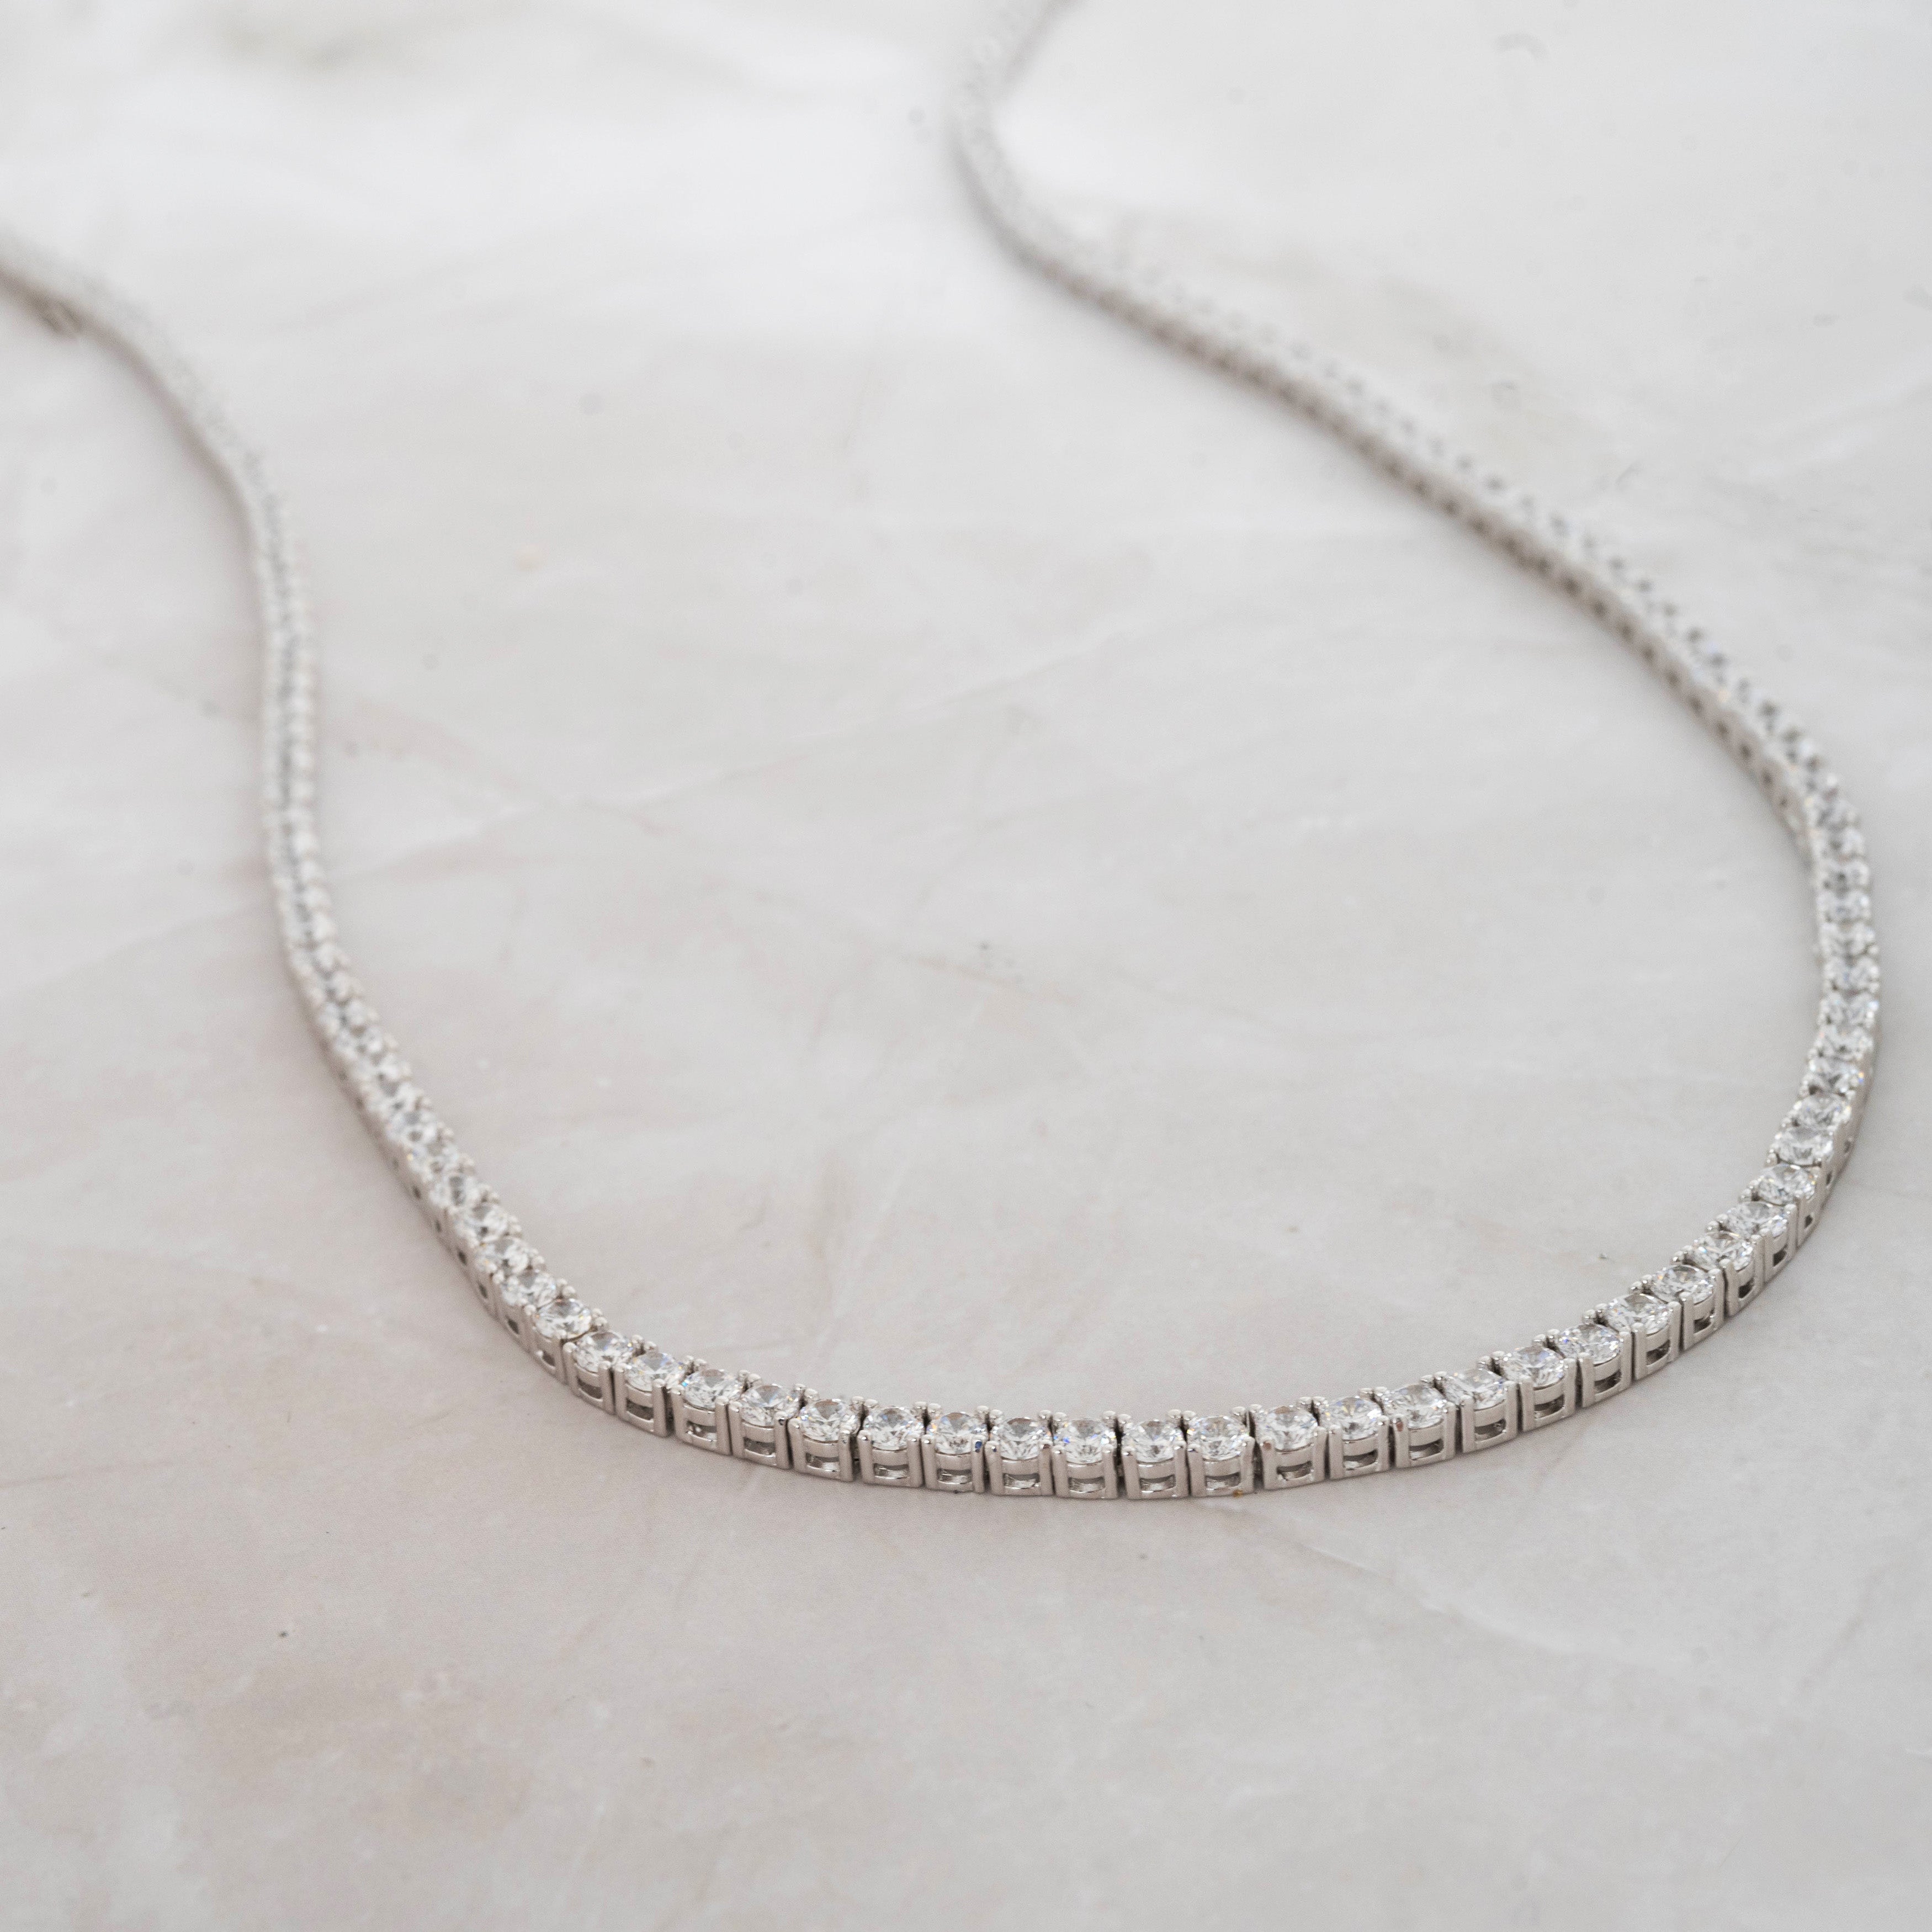 Small Diamond Multi-Row Tennis Necklace - Nuha Jewelers